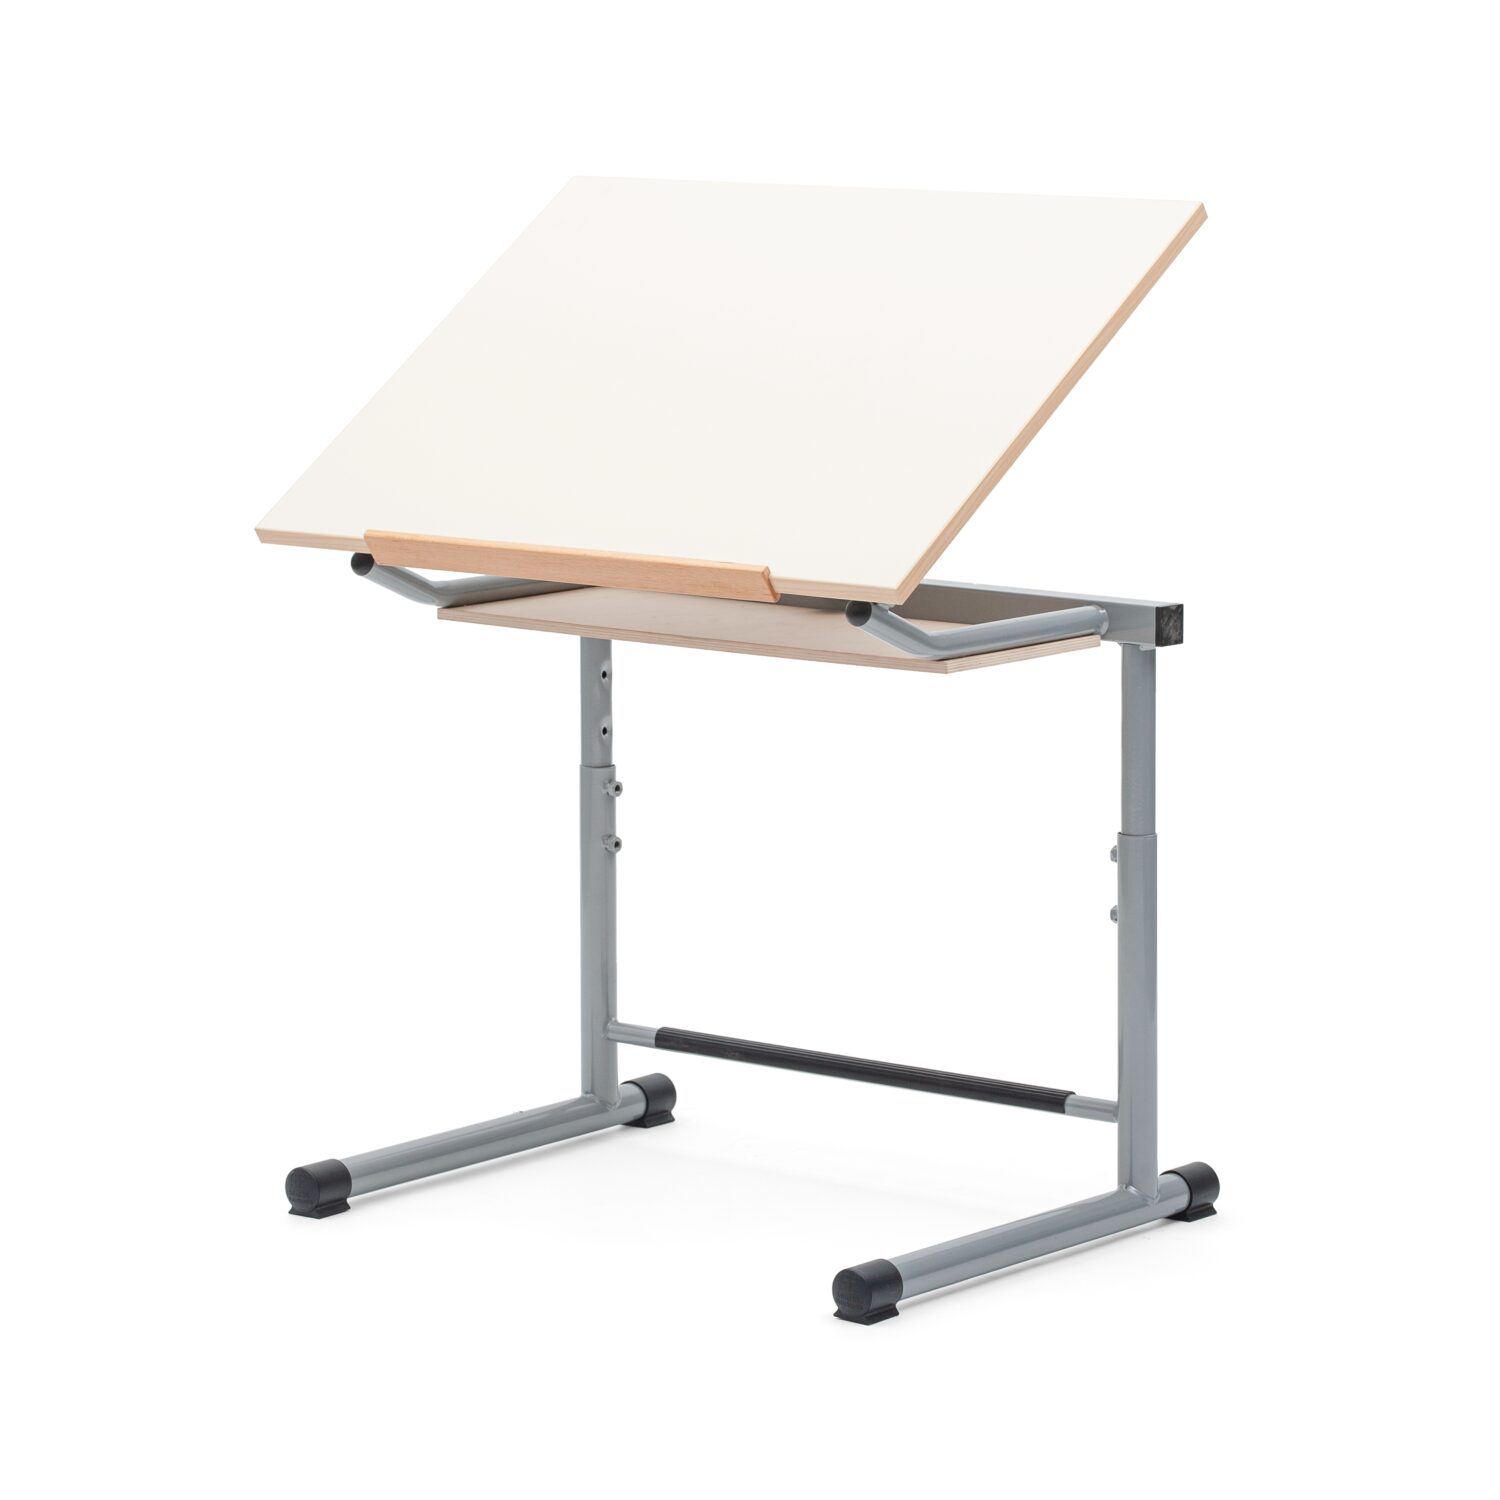 Sa780 scaled tavolo disegno regolabile in altezza con sottopiano in faggio piano inclinabile